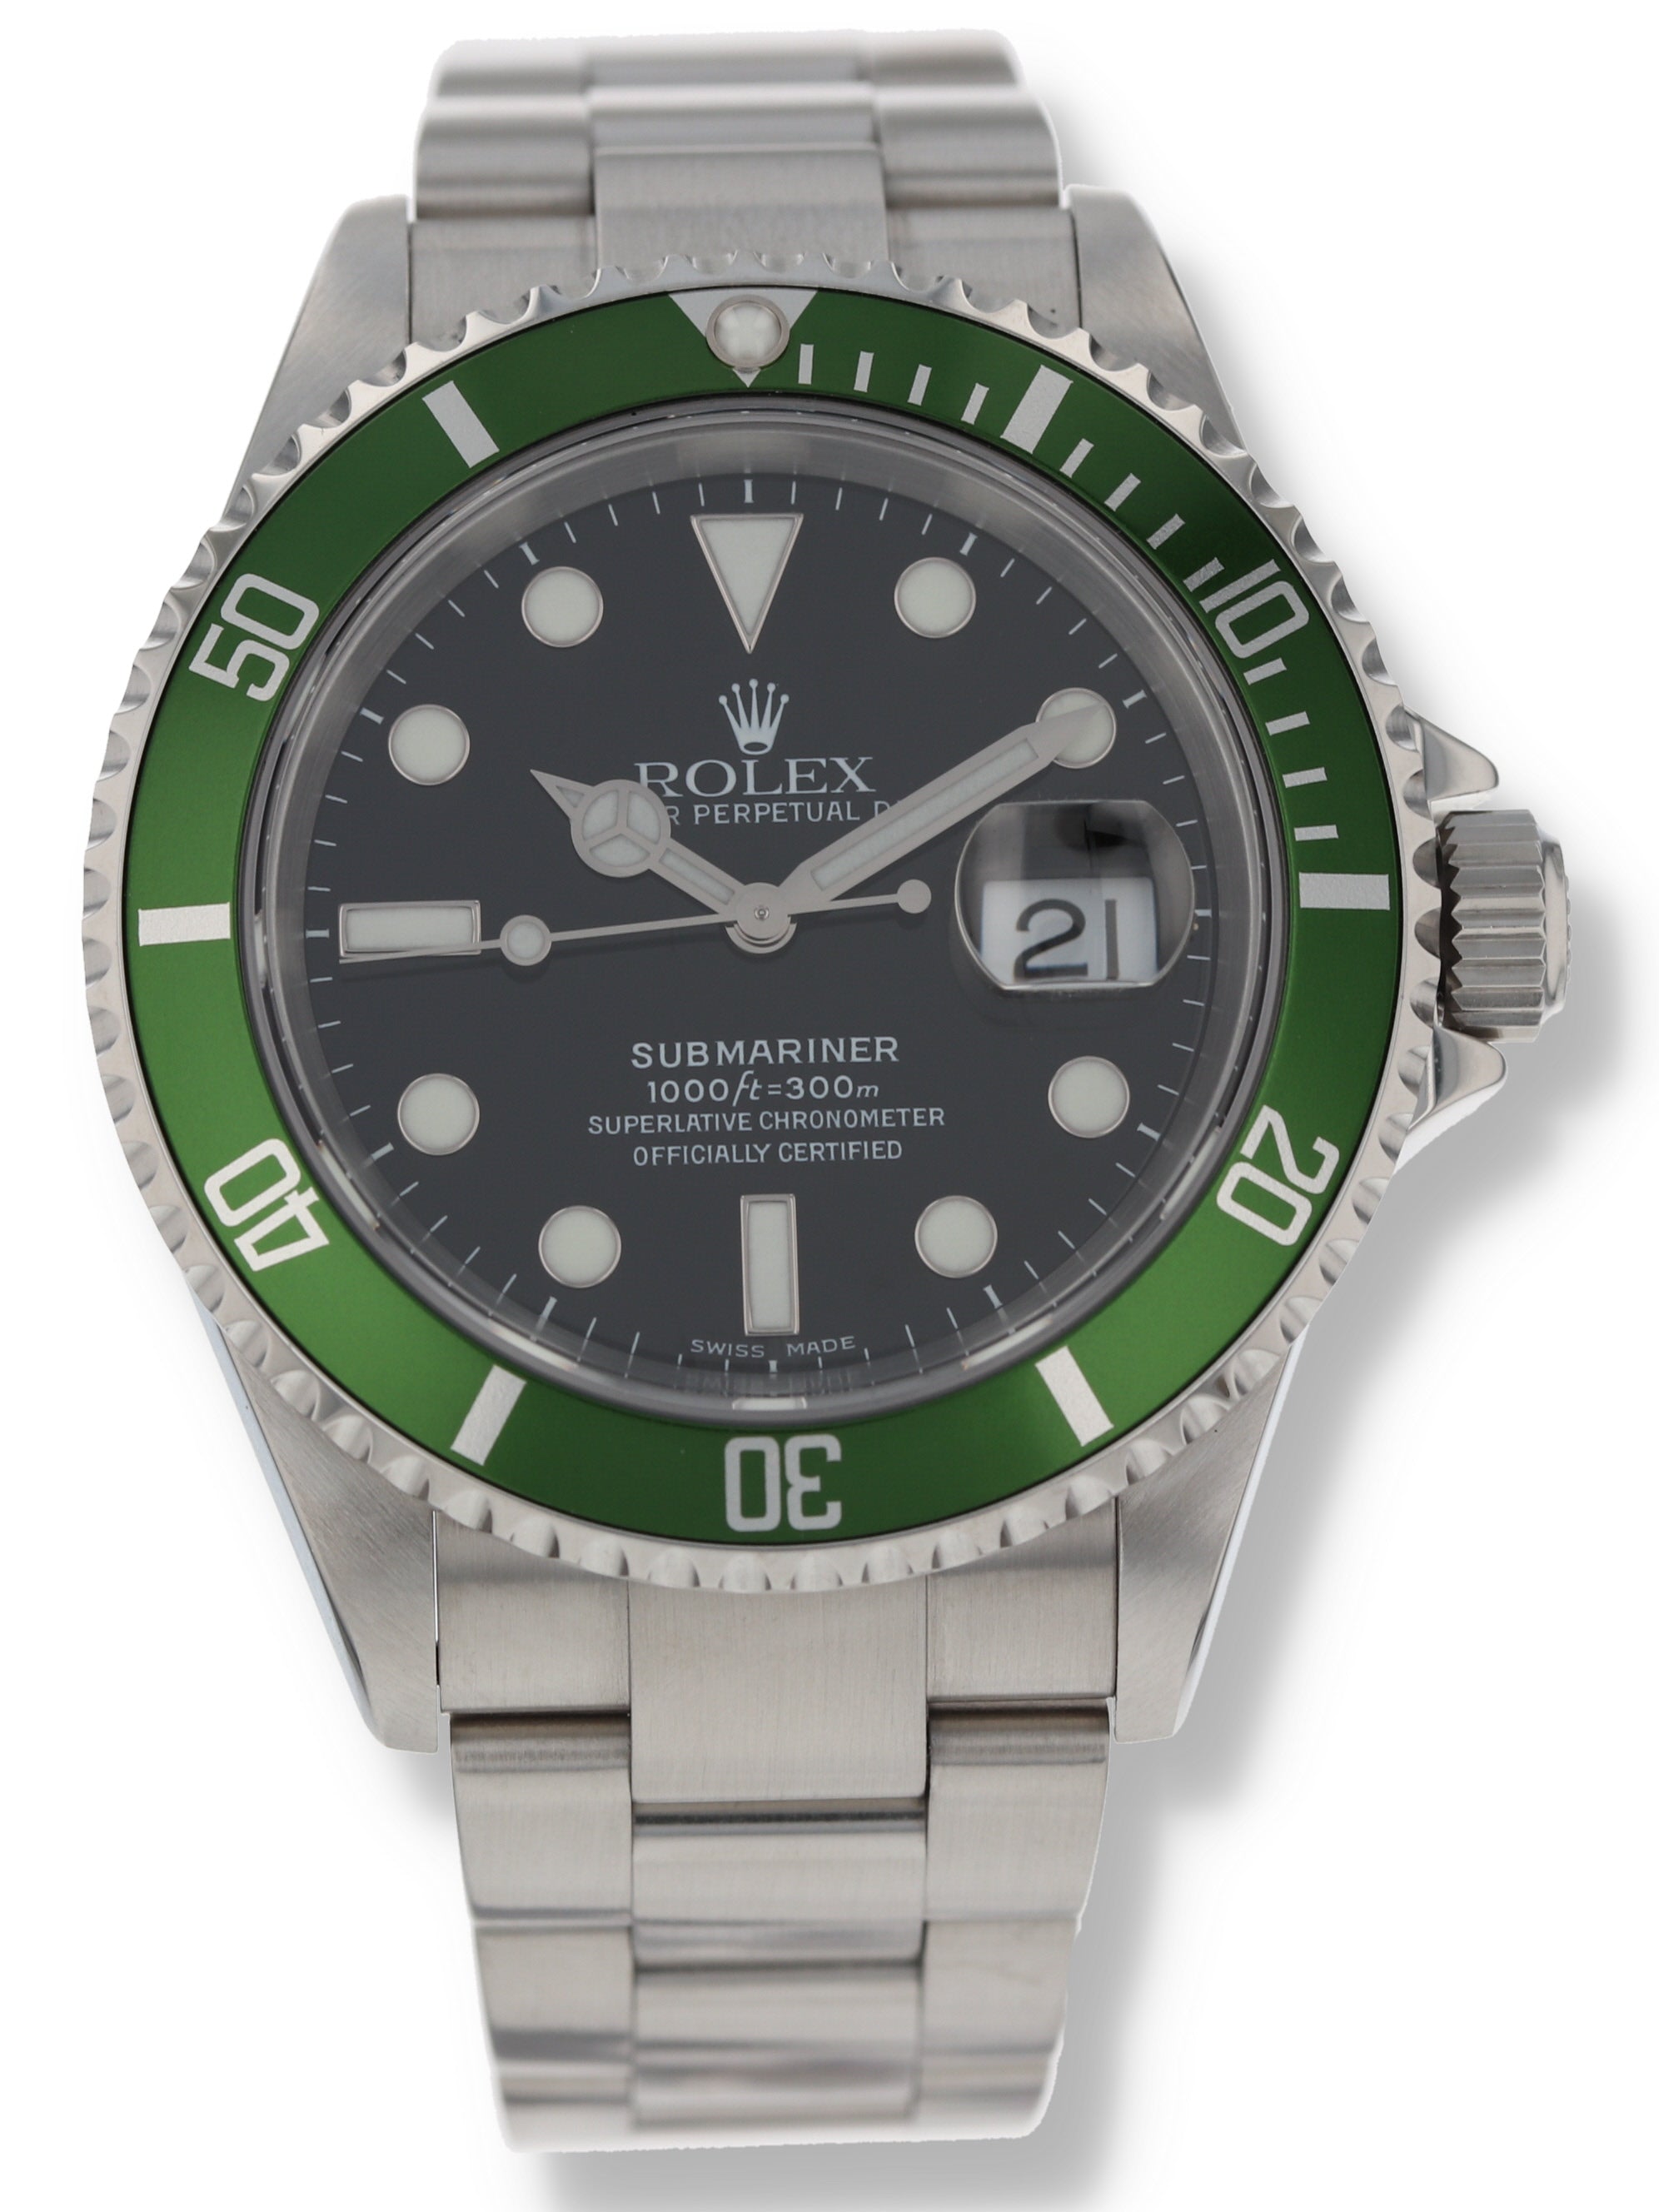 Rolex Kermit Submariner 16610LV Black Dial Watch - Big Watch Buyers